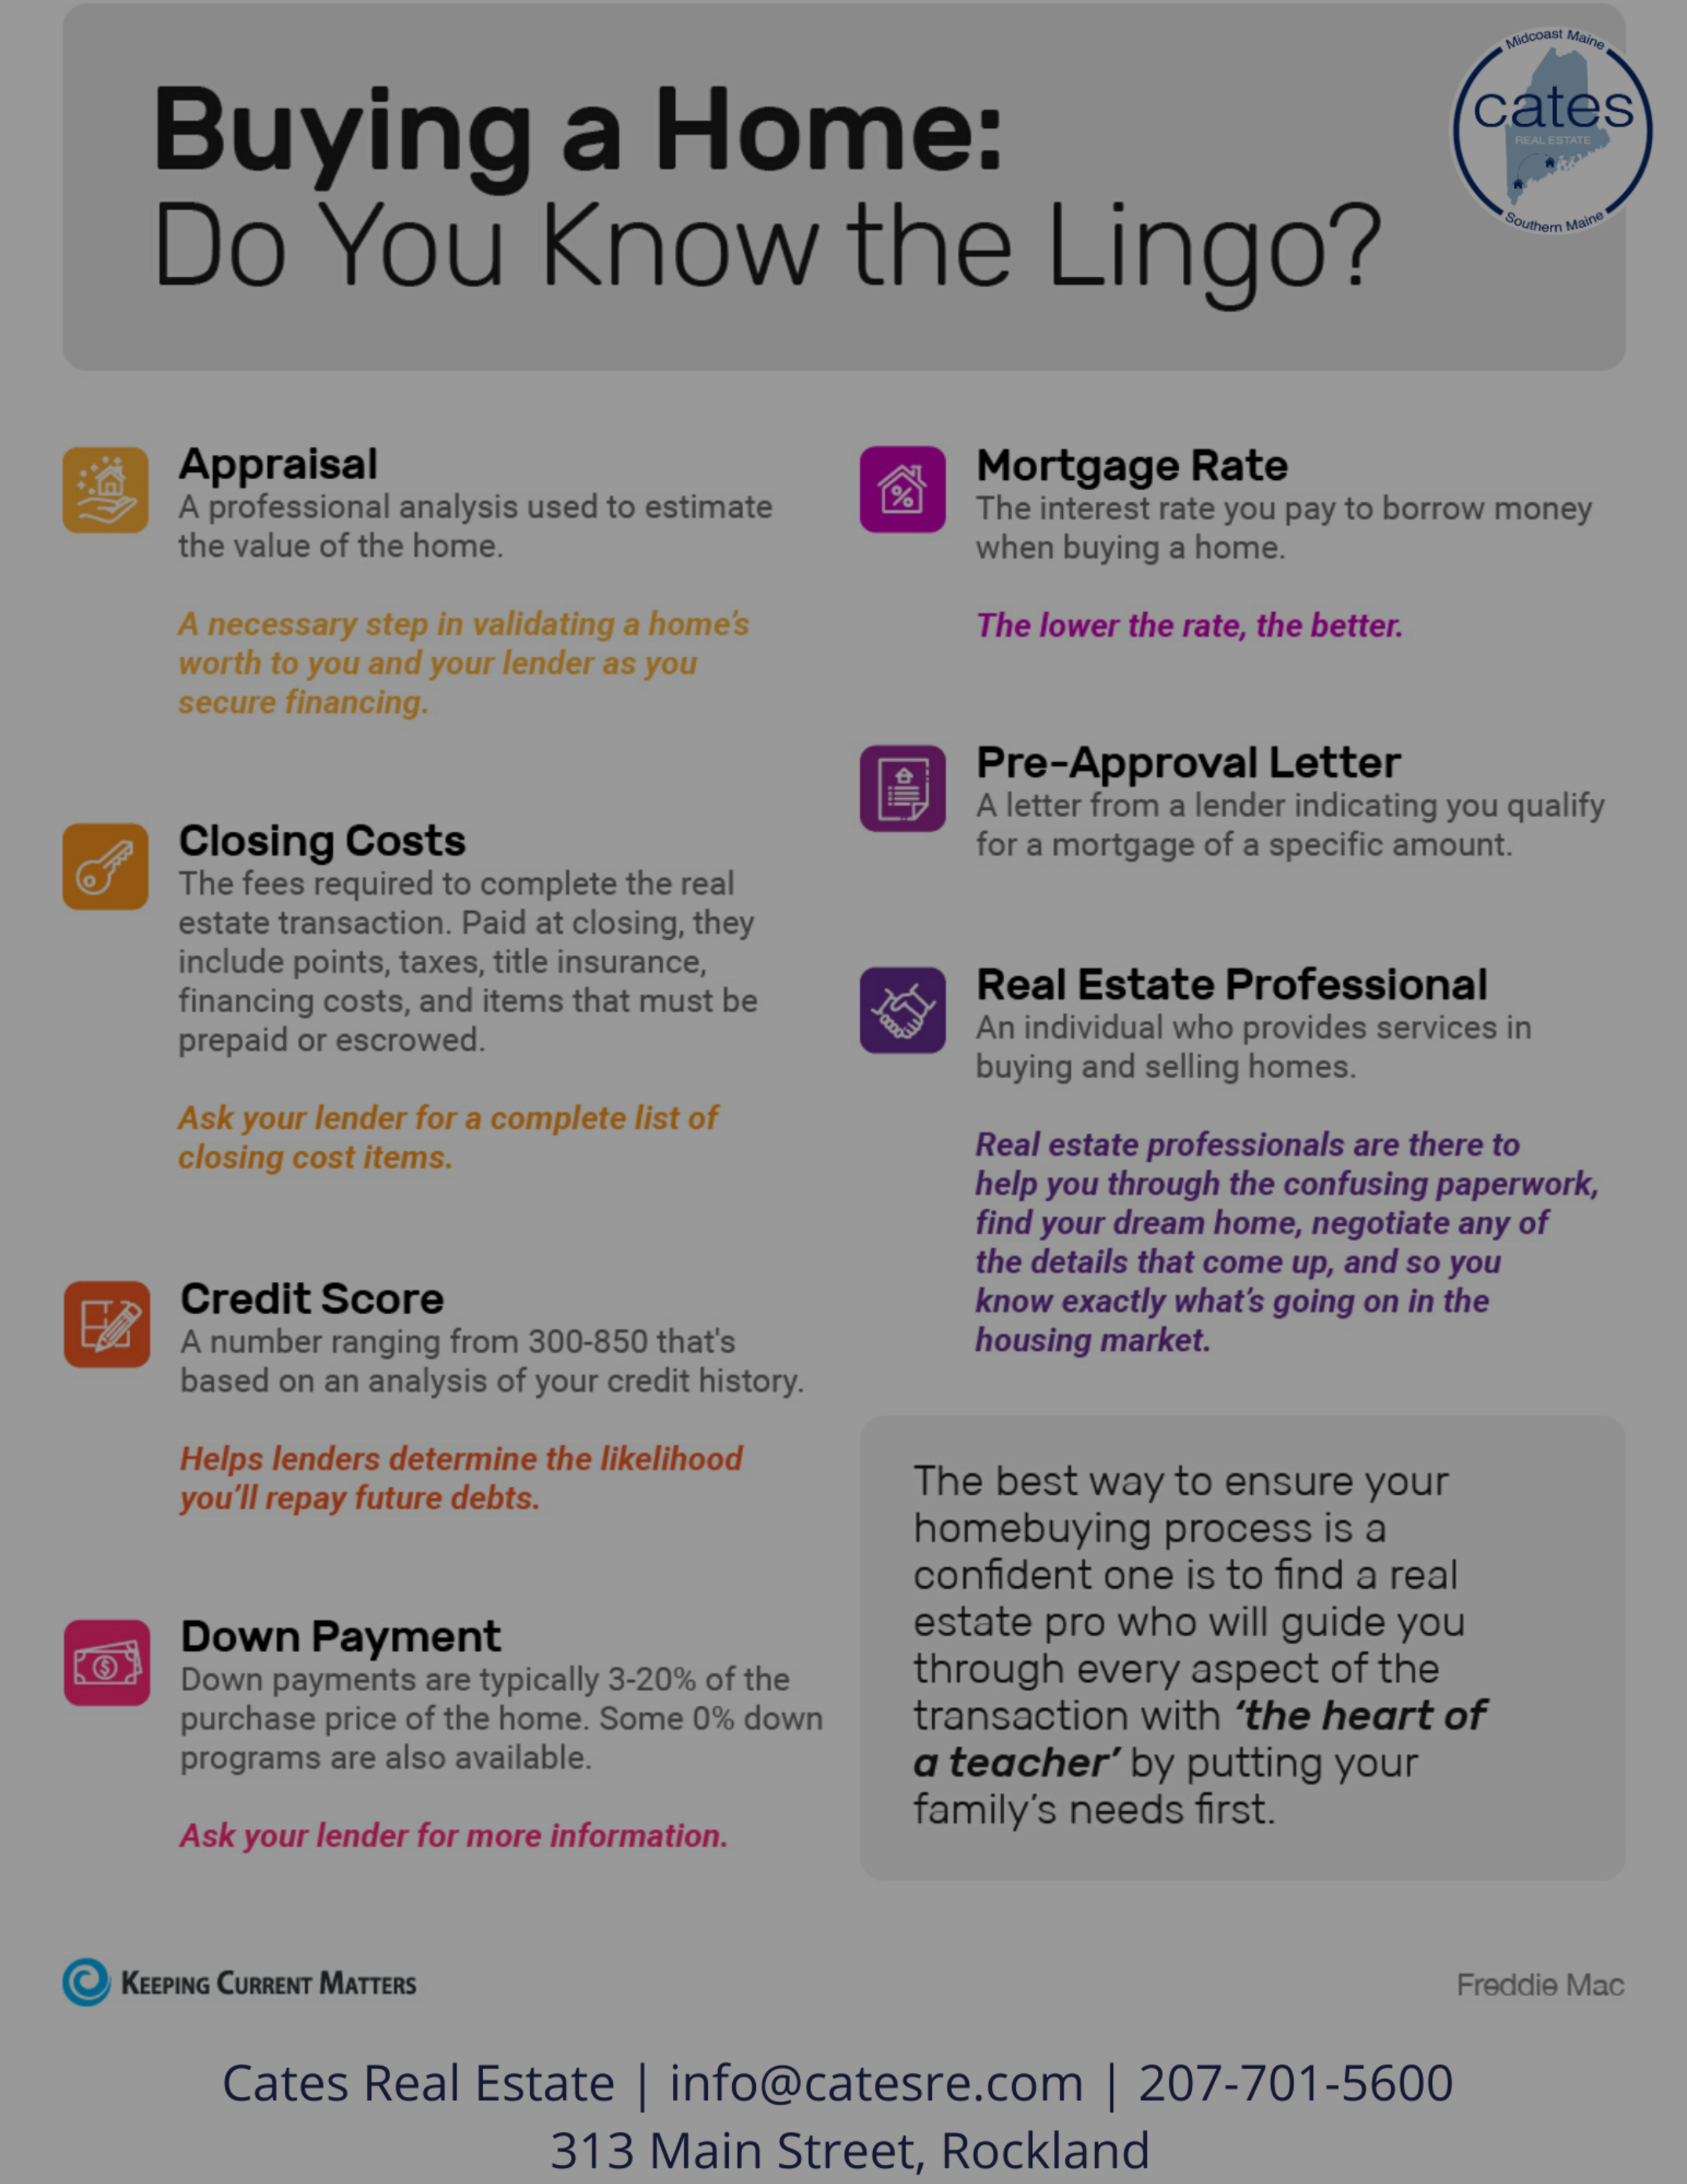 Do You Know The Lingo?